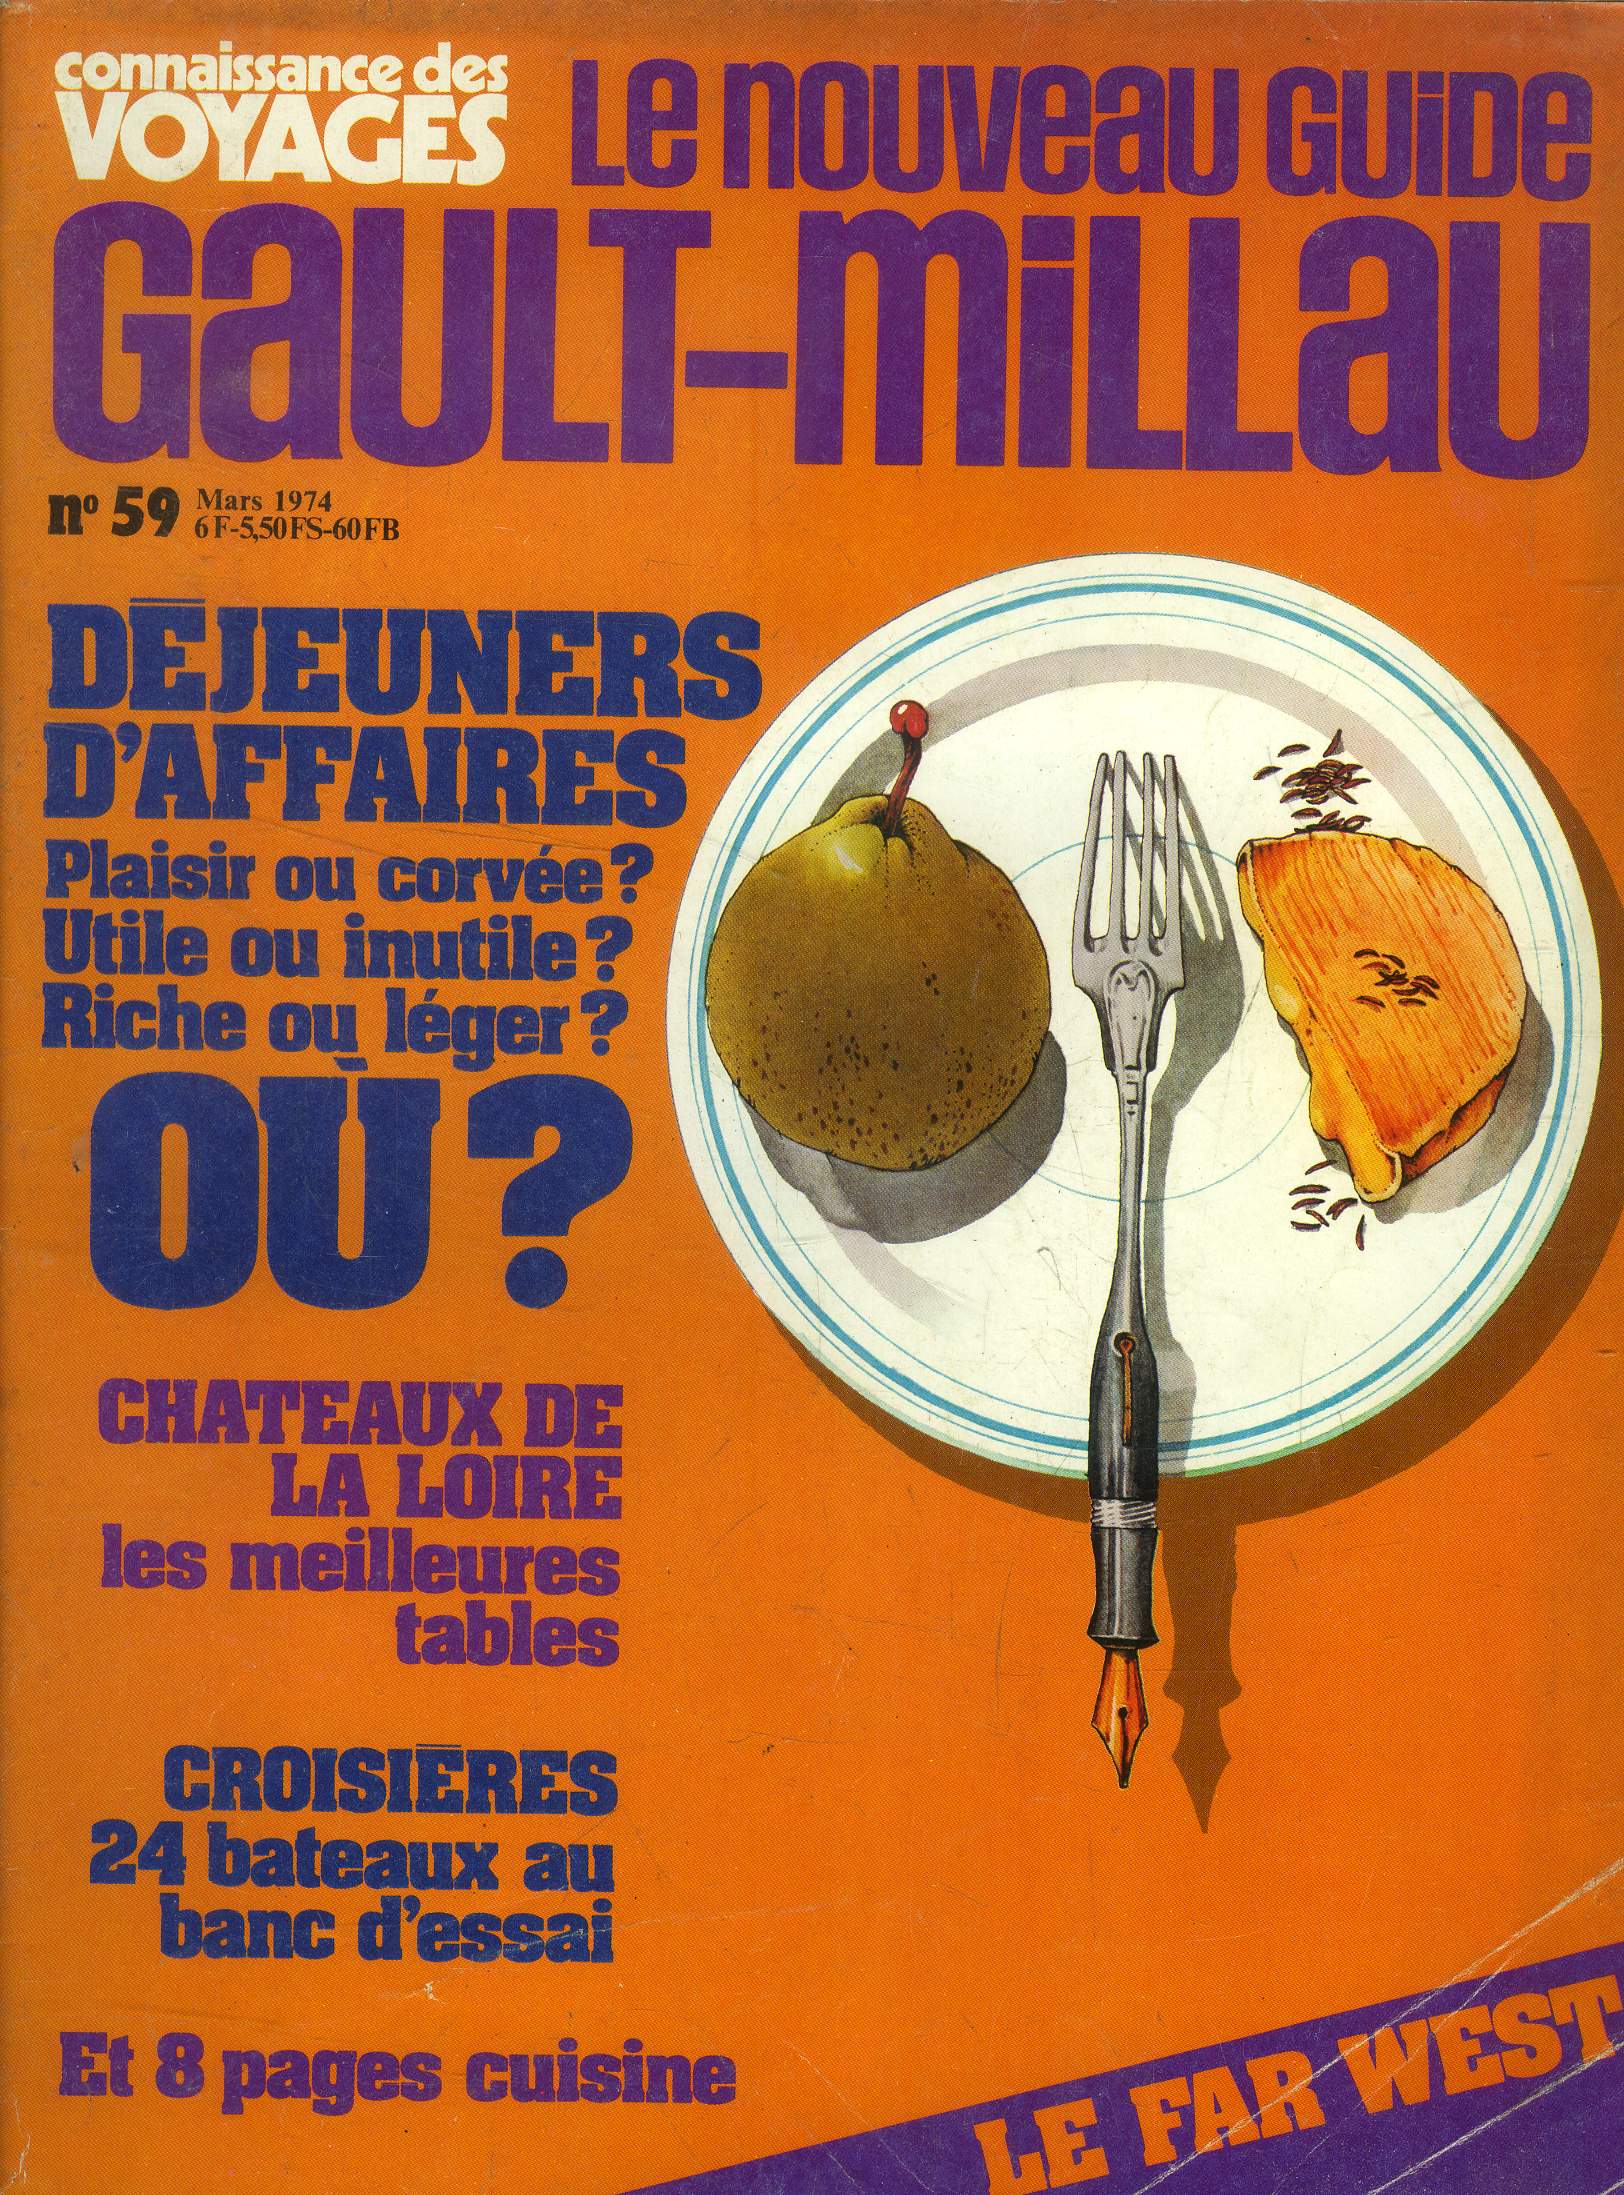 Le nouveau Guide Gault-Millau - Magazine n 59 - Mars 1974 :